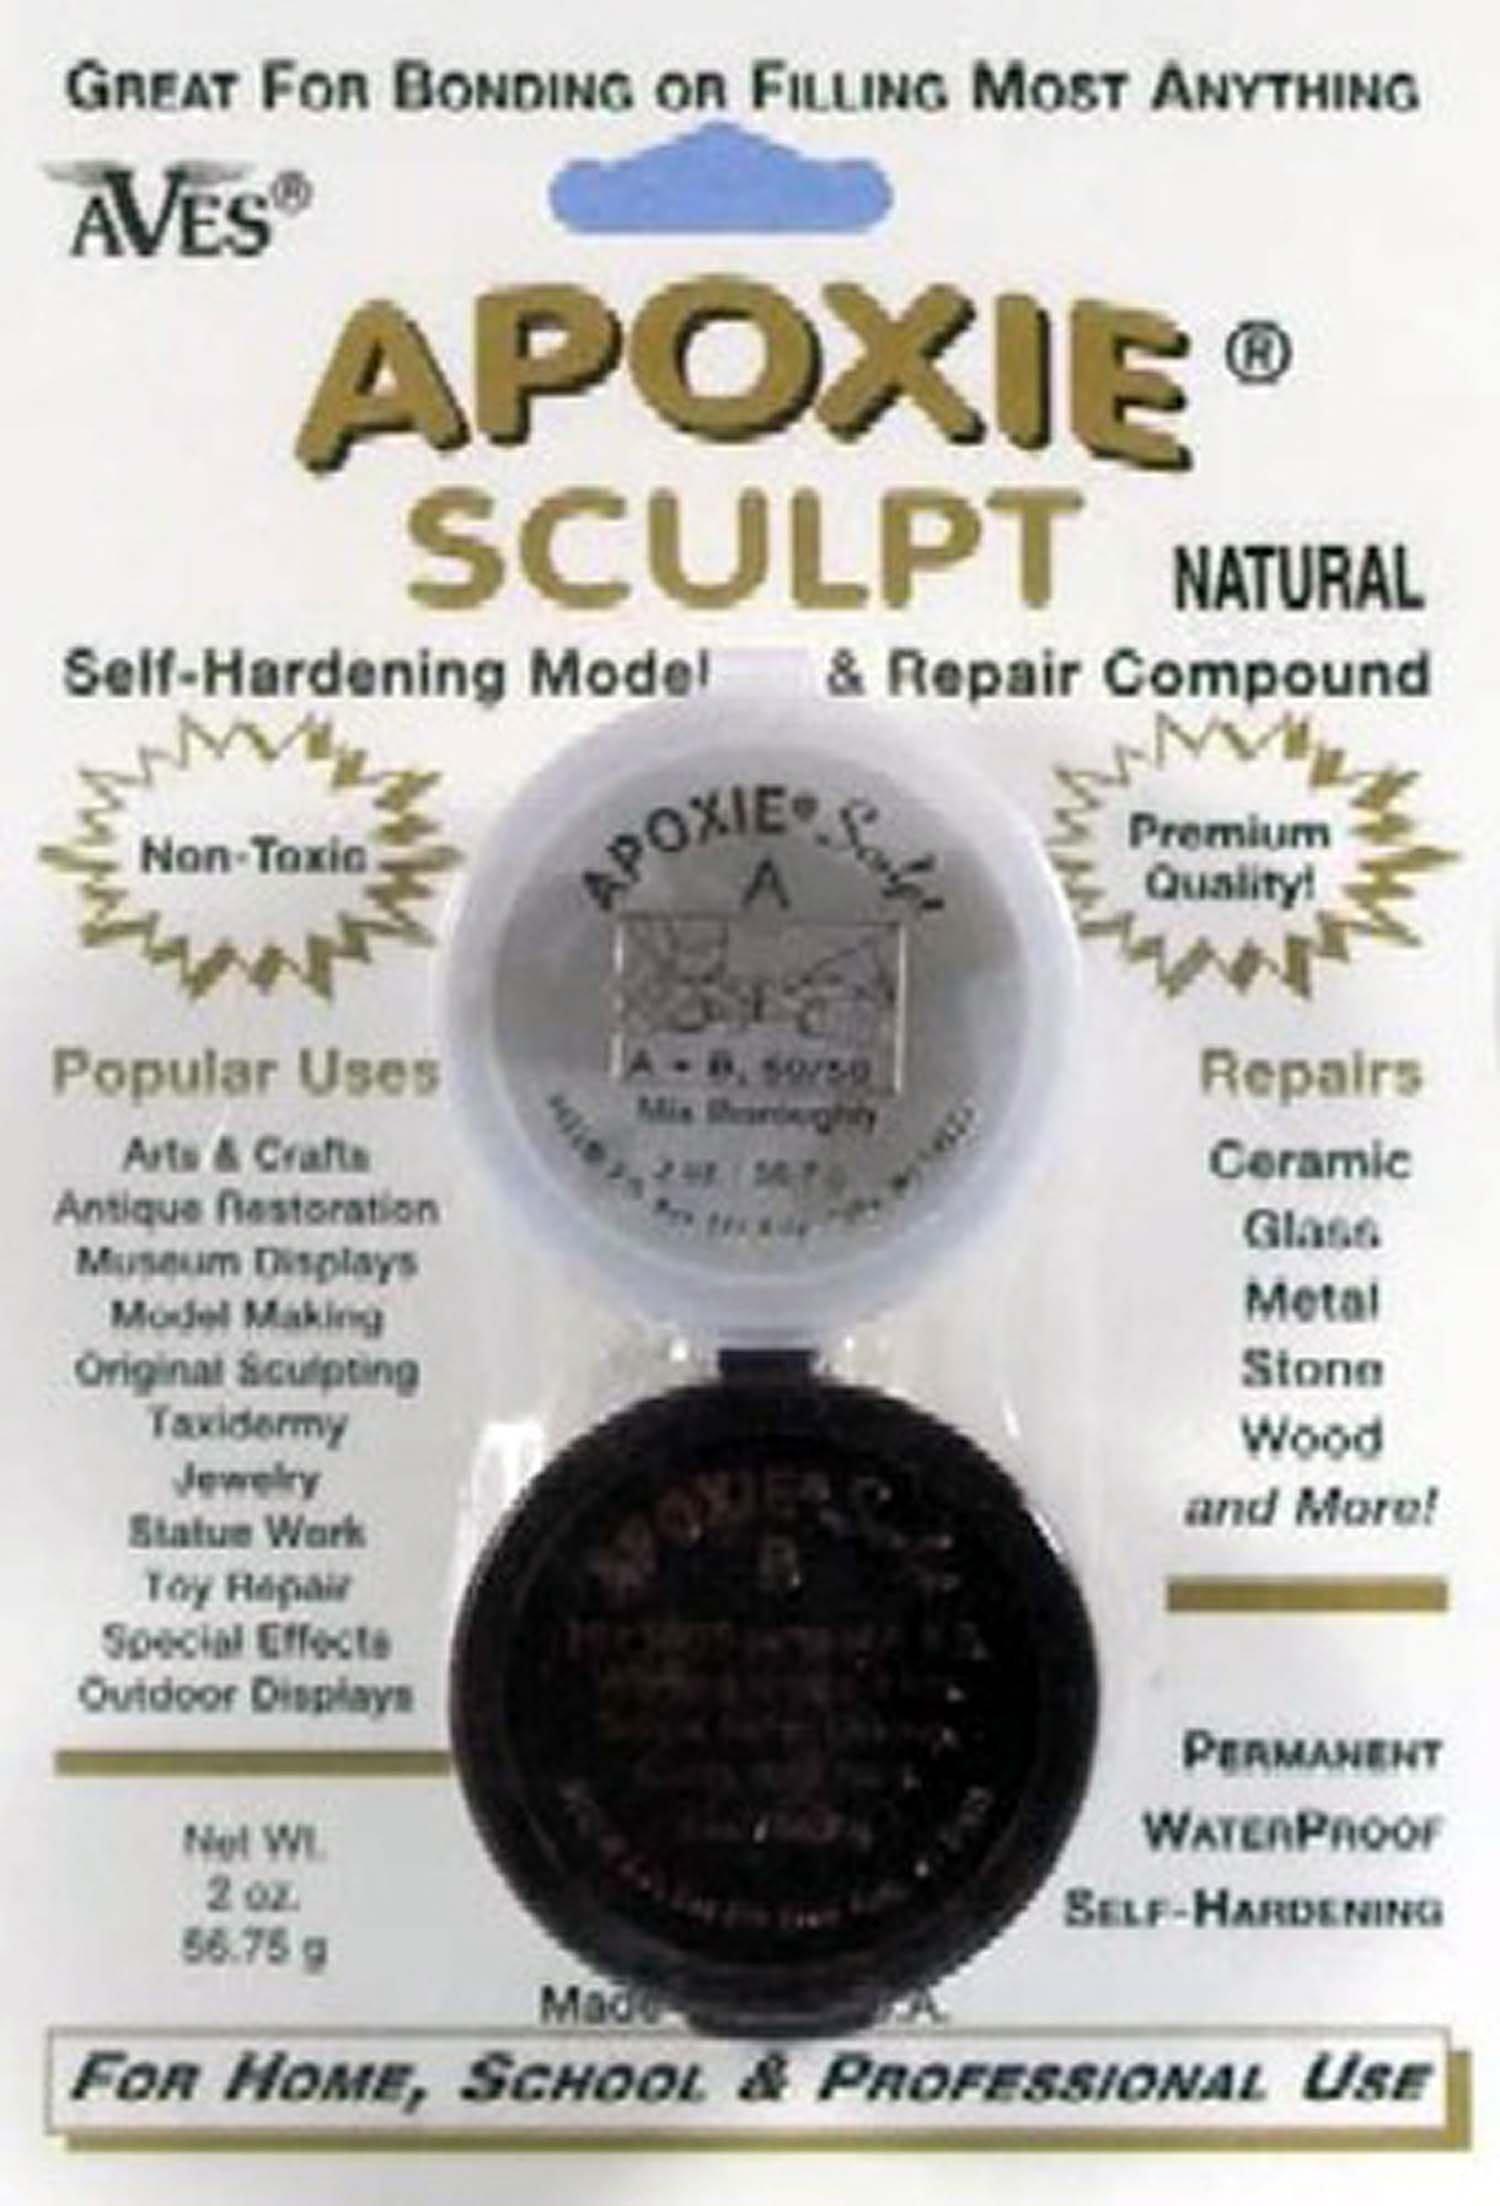 Aves Apoxie Sculpt - 2 Part Modeling Compound (A & B) - 1 Pound, Bronze